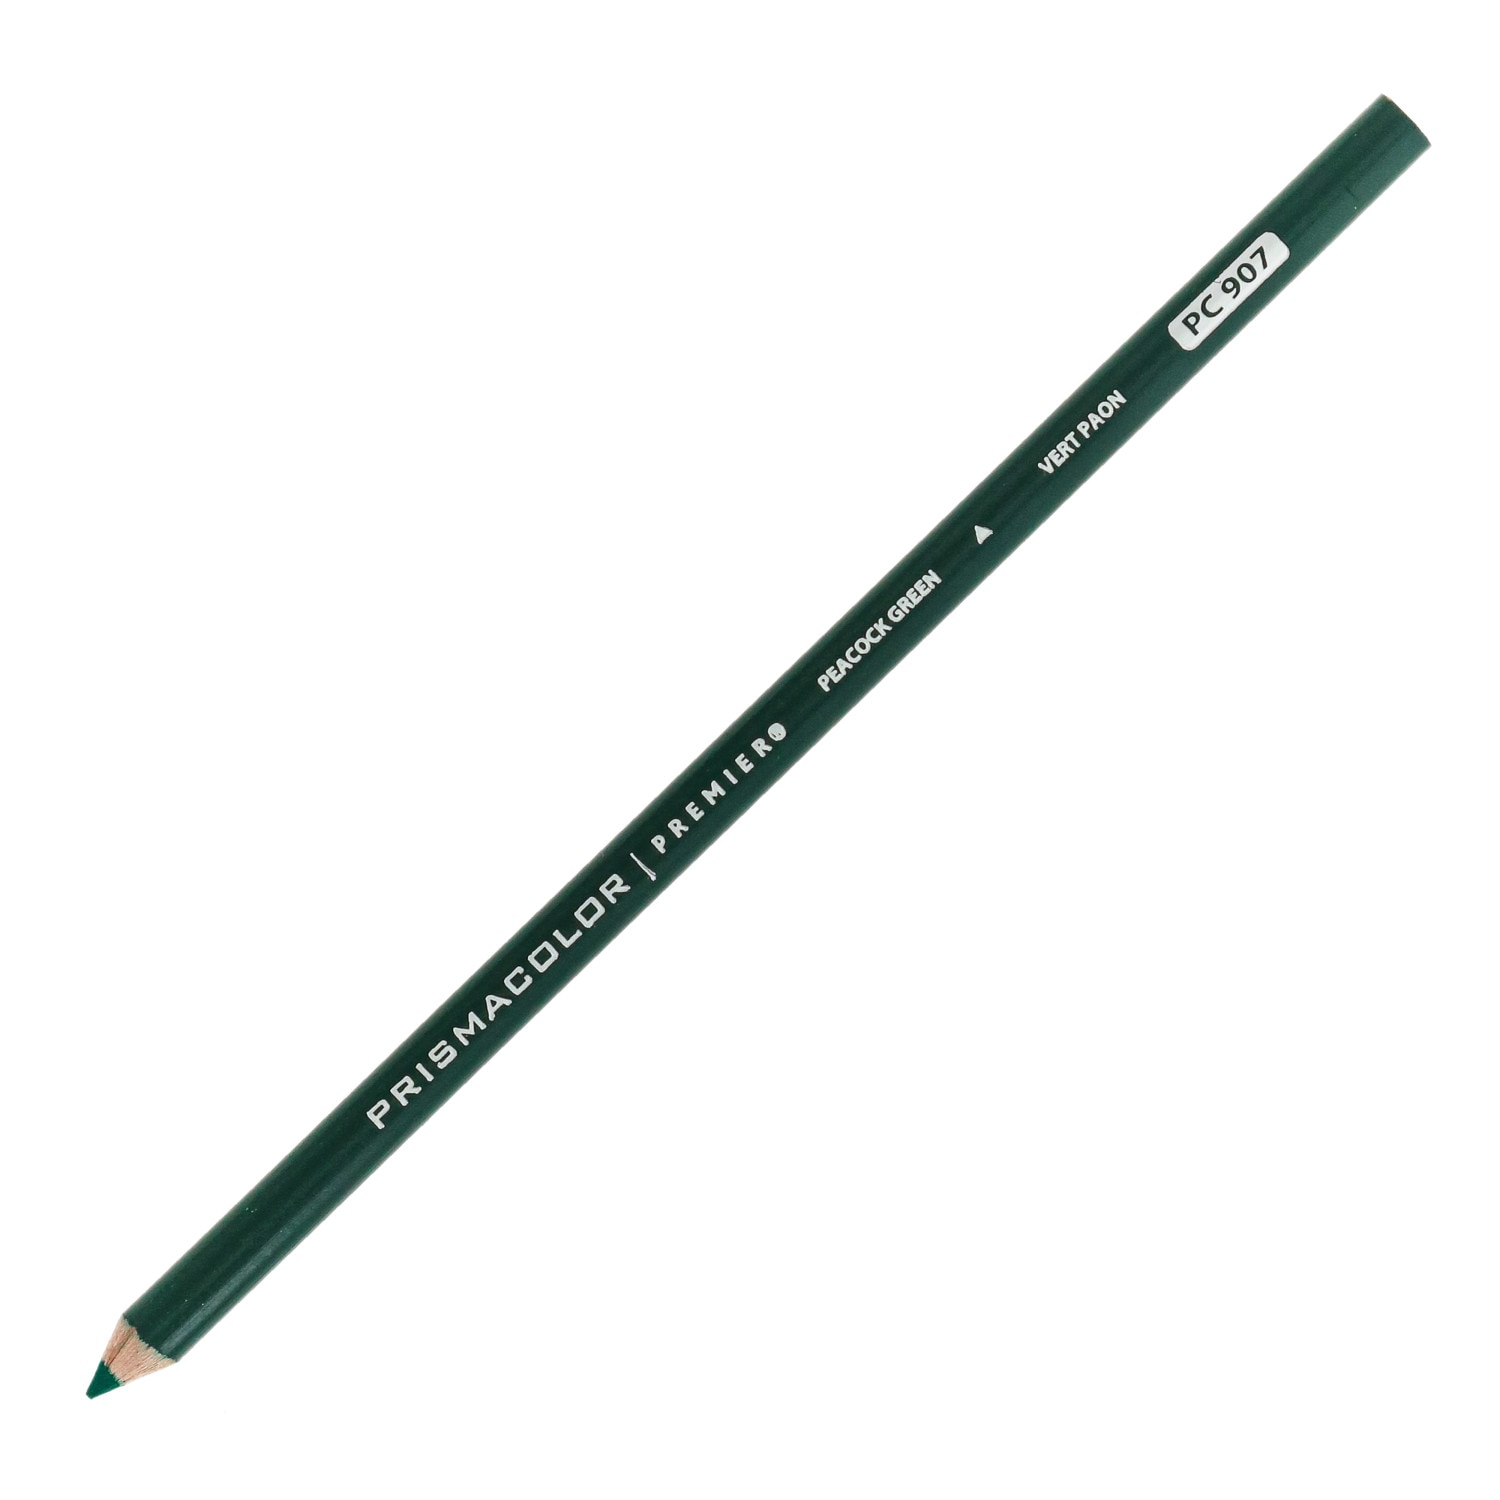 Prismacolor Premier Thick Core Colored Pencil, Peacock Green